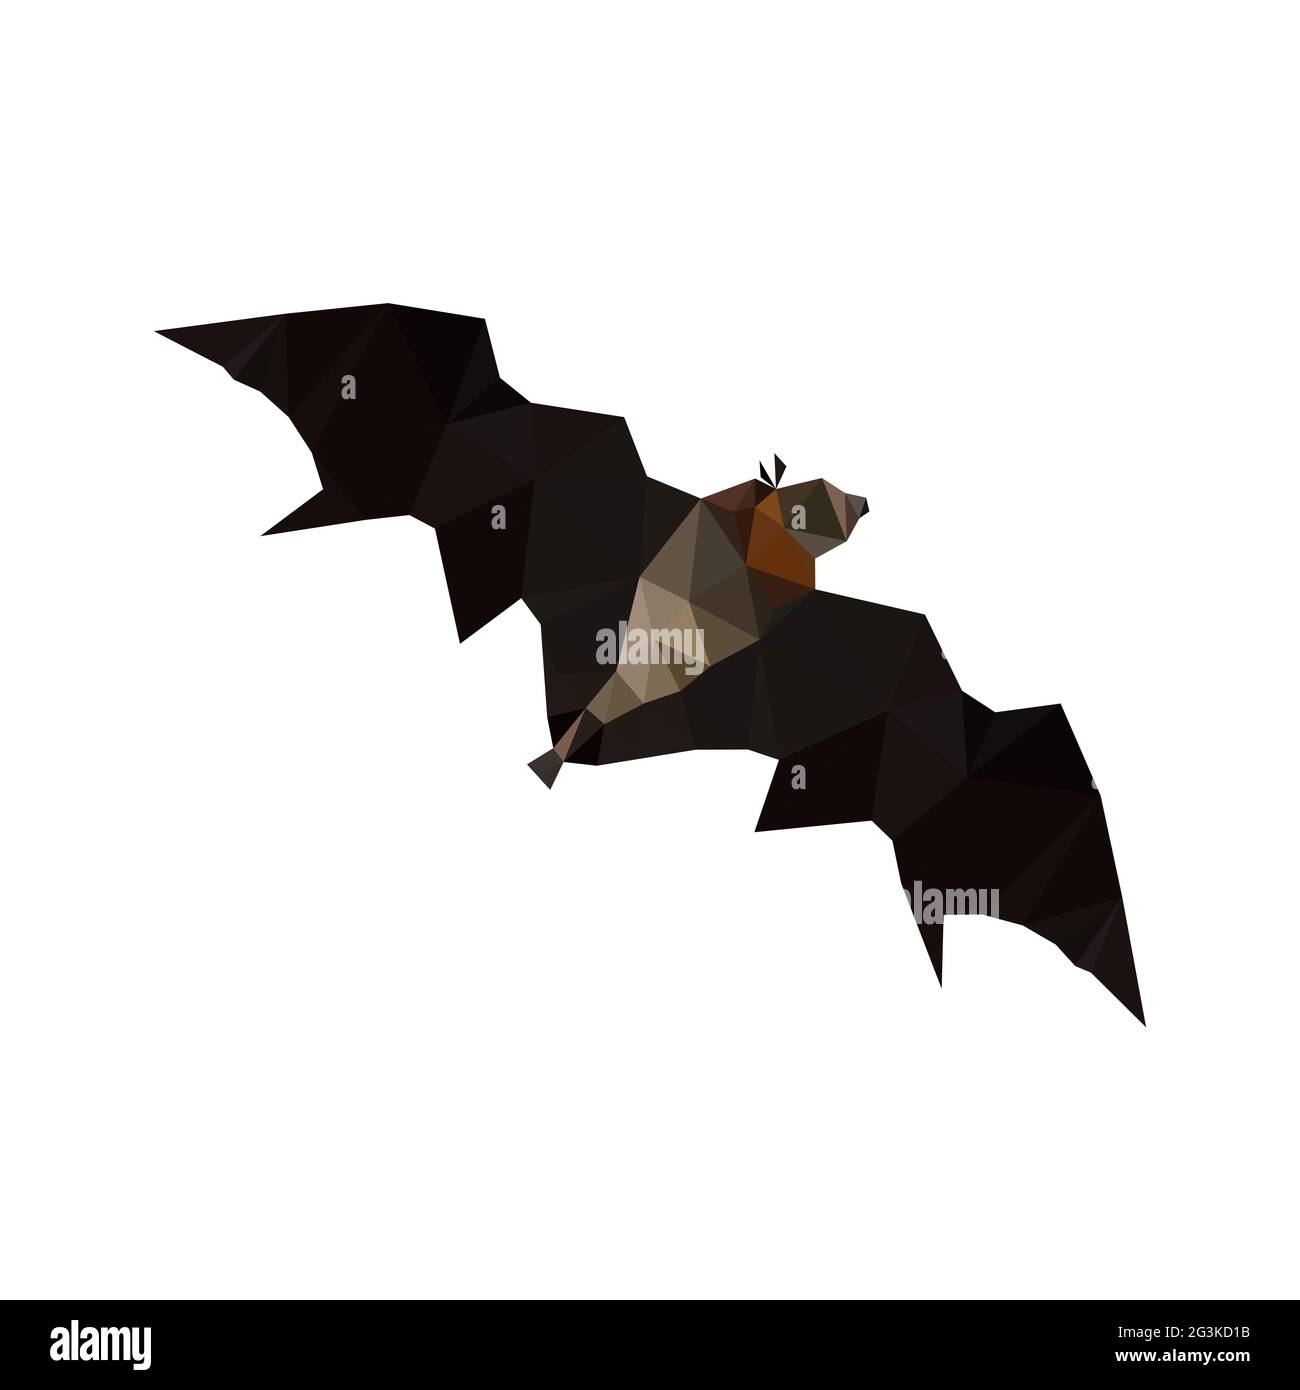 Illustration of origami flying fruit bat Stock Photo